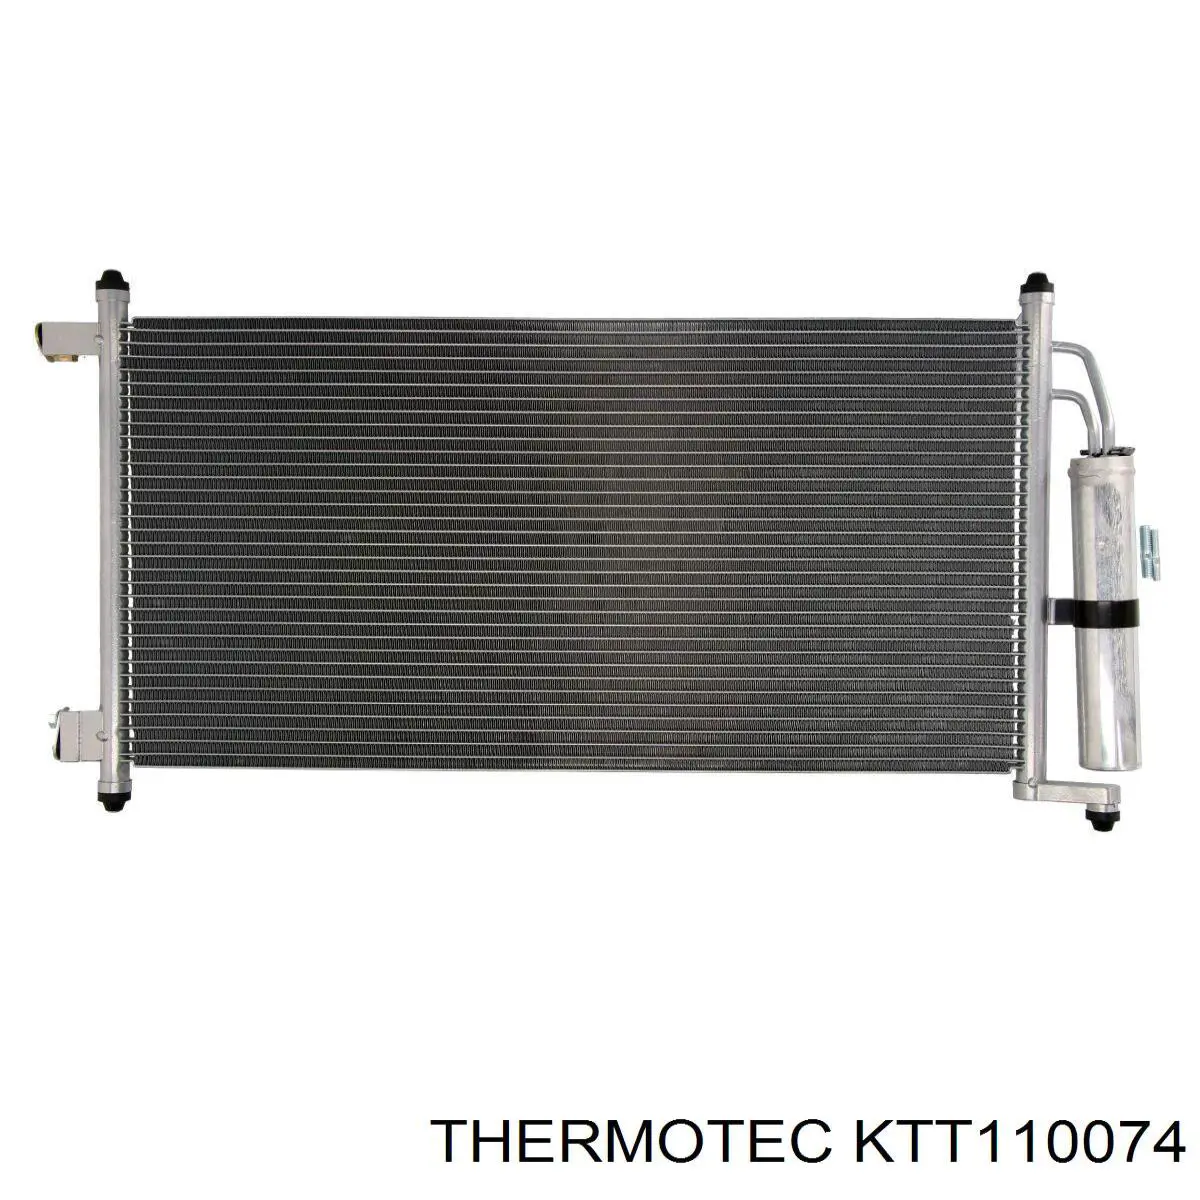 KTT110074 Thermotec condensador aire acondicionado